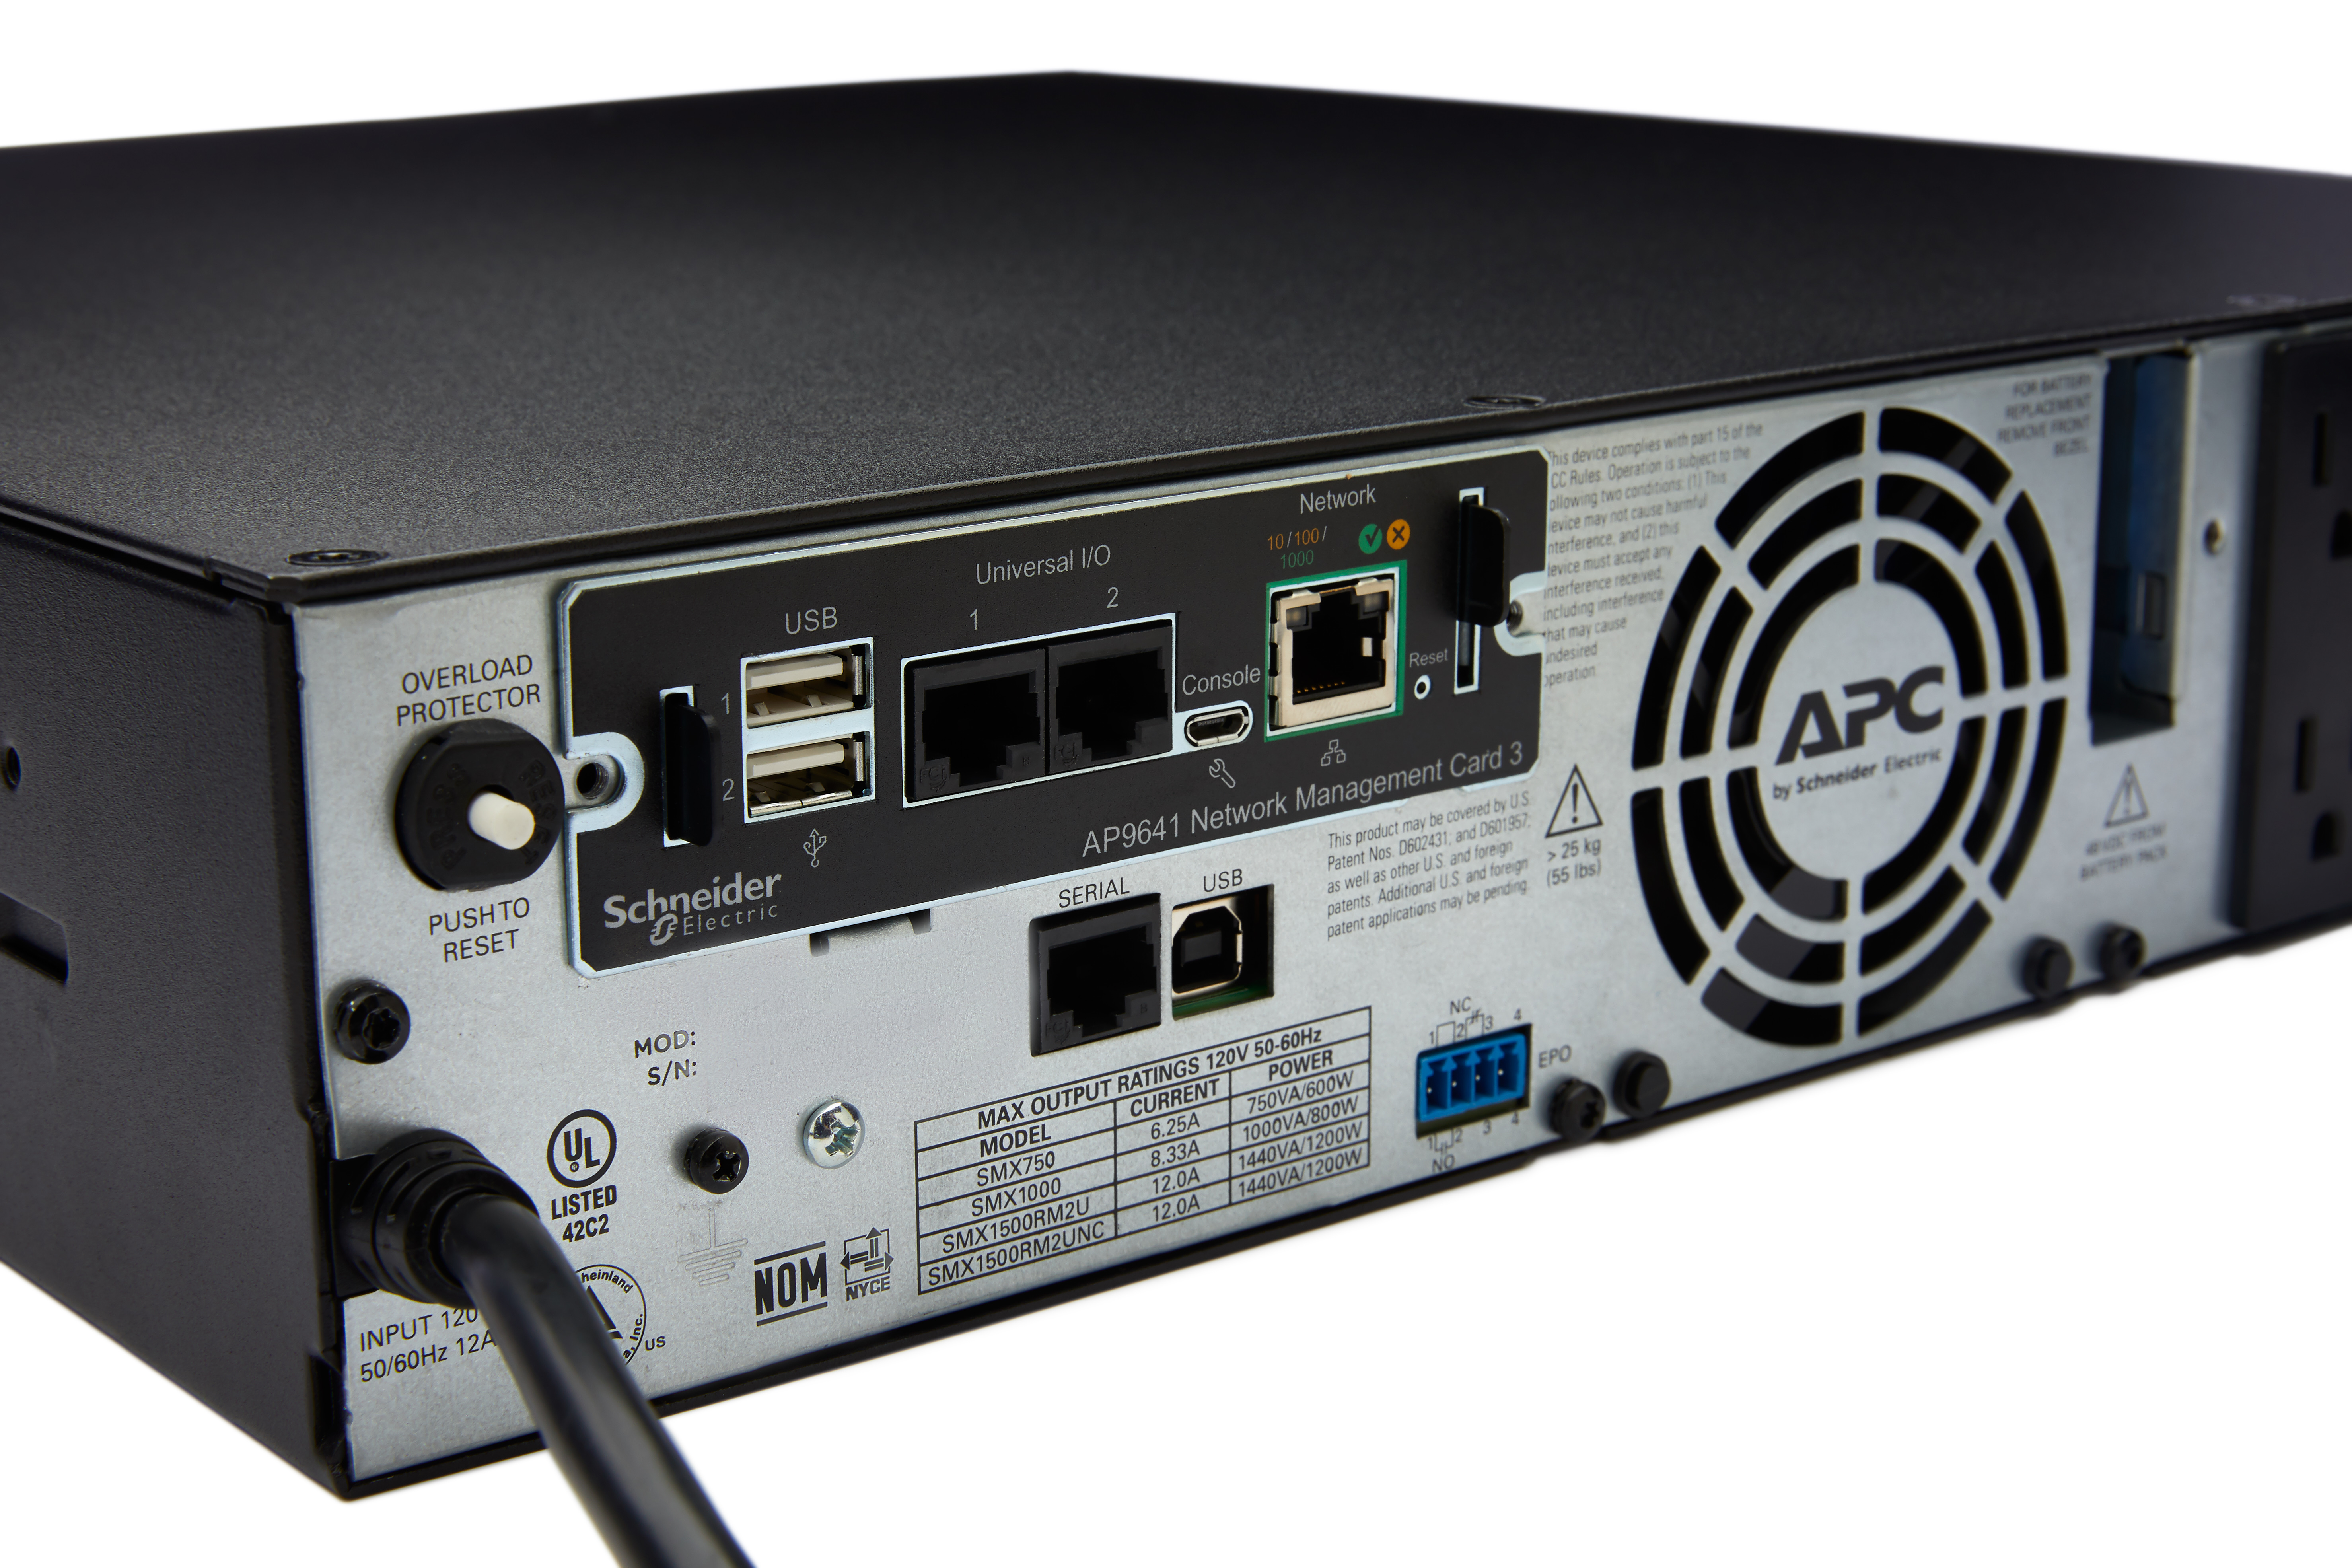 APC USV-Netzwerkmanagementkarte mit Raumüberwachung